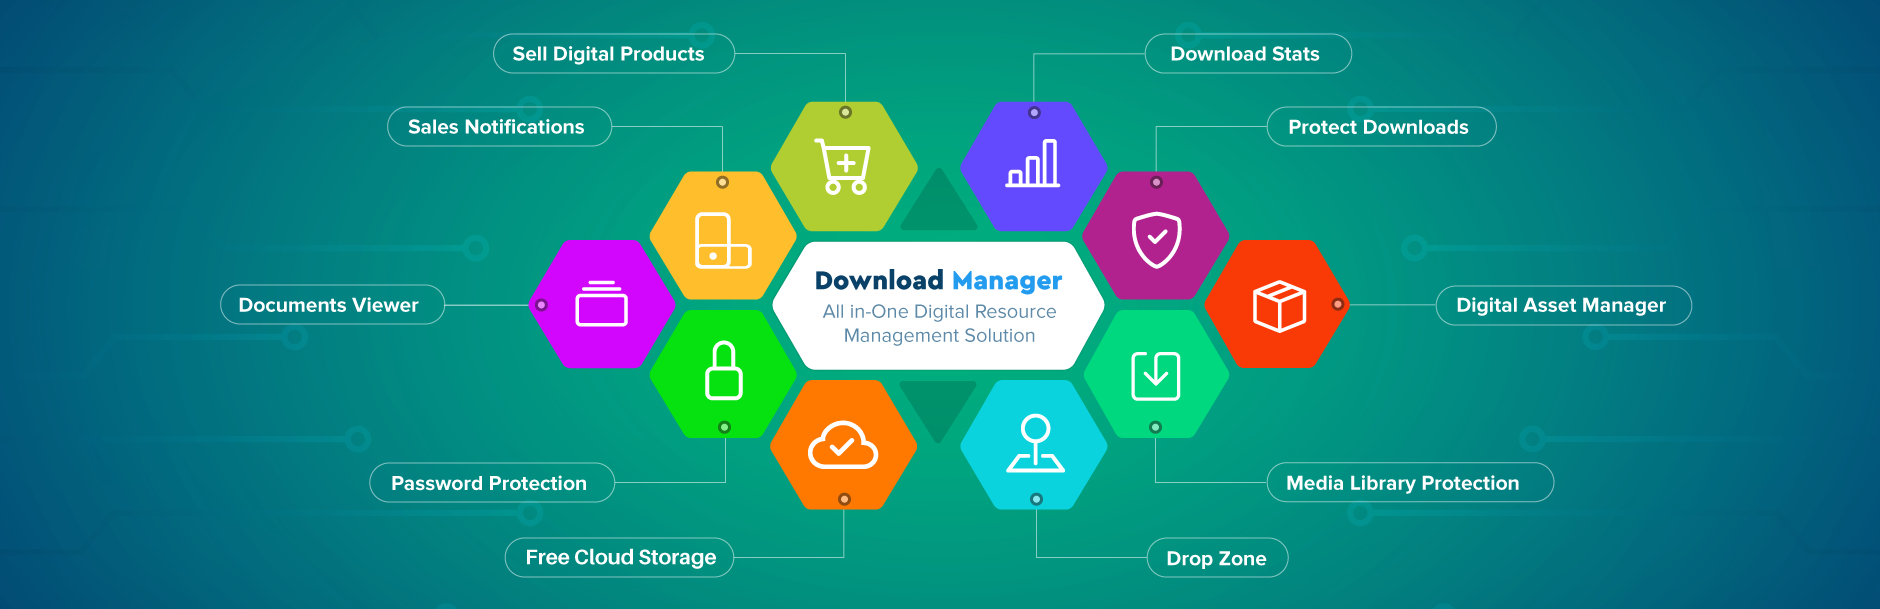 Produktbild für Download Manager.